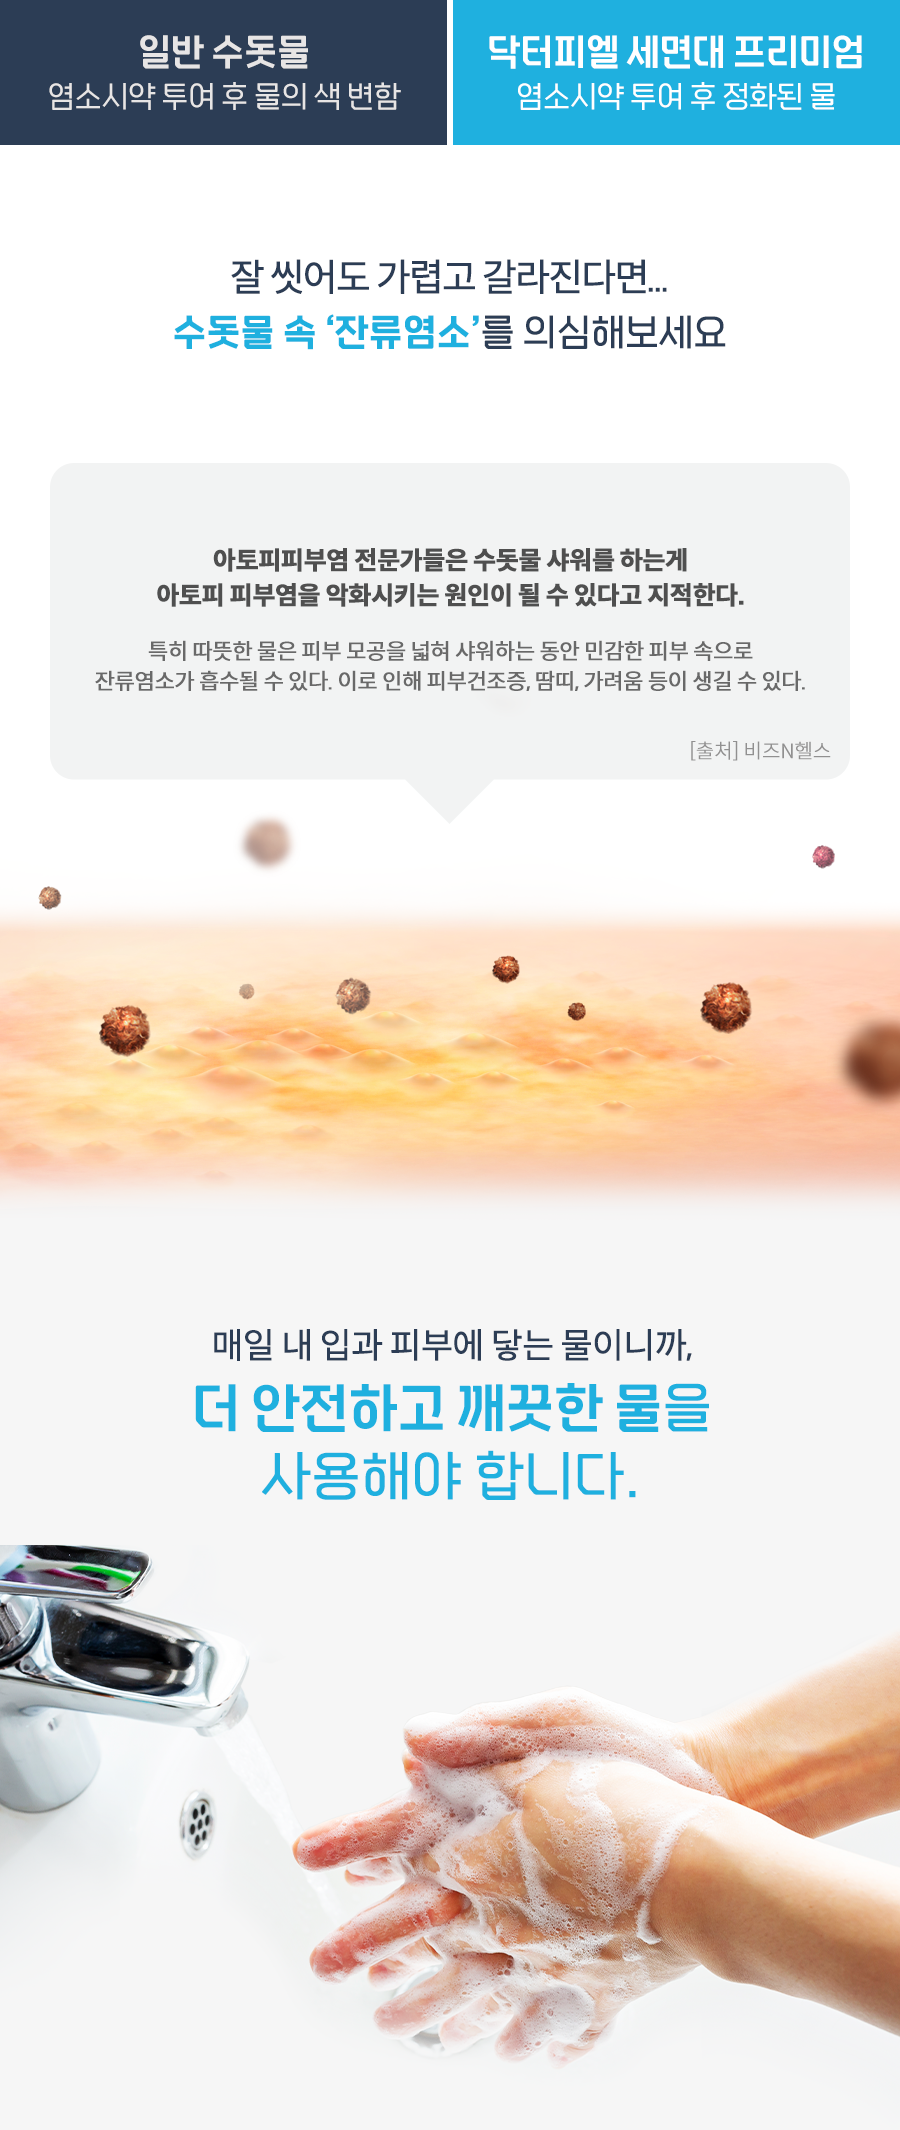 韓國食品-[닥터피엘] 세면대 프리미엄 기본세트